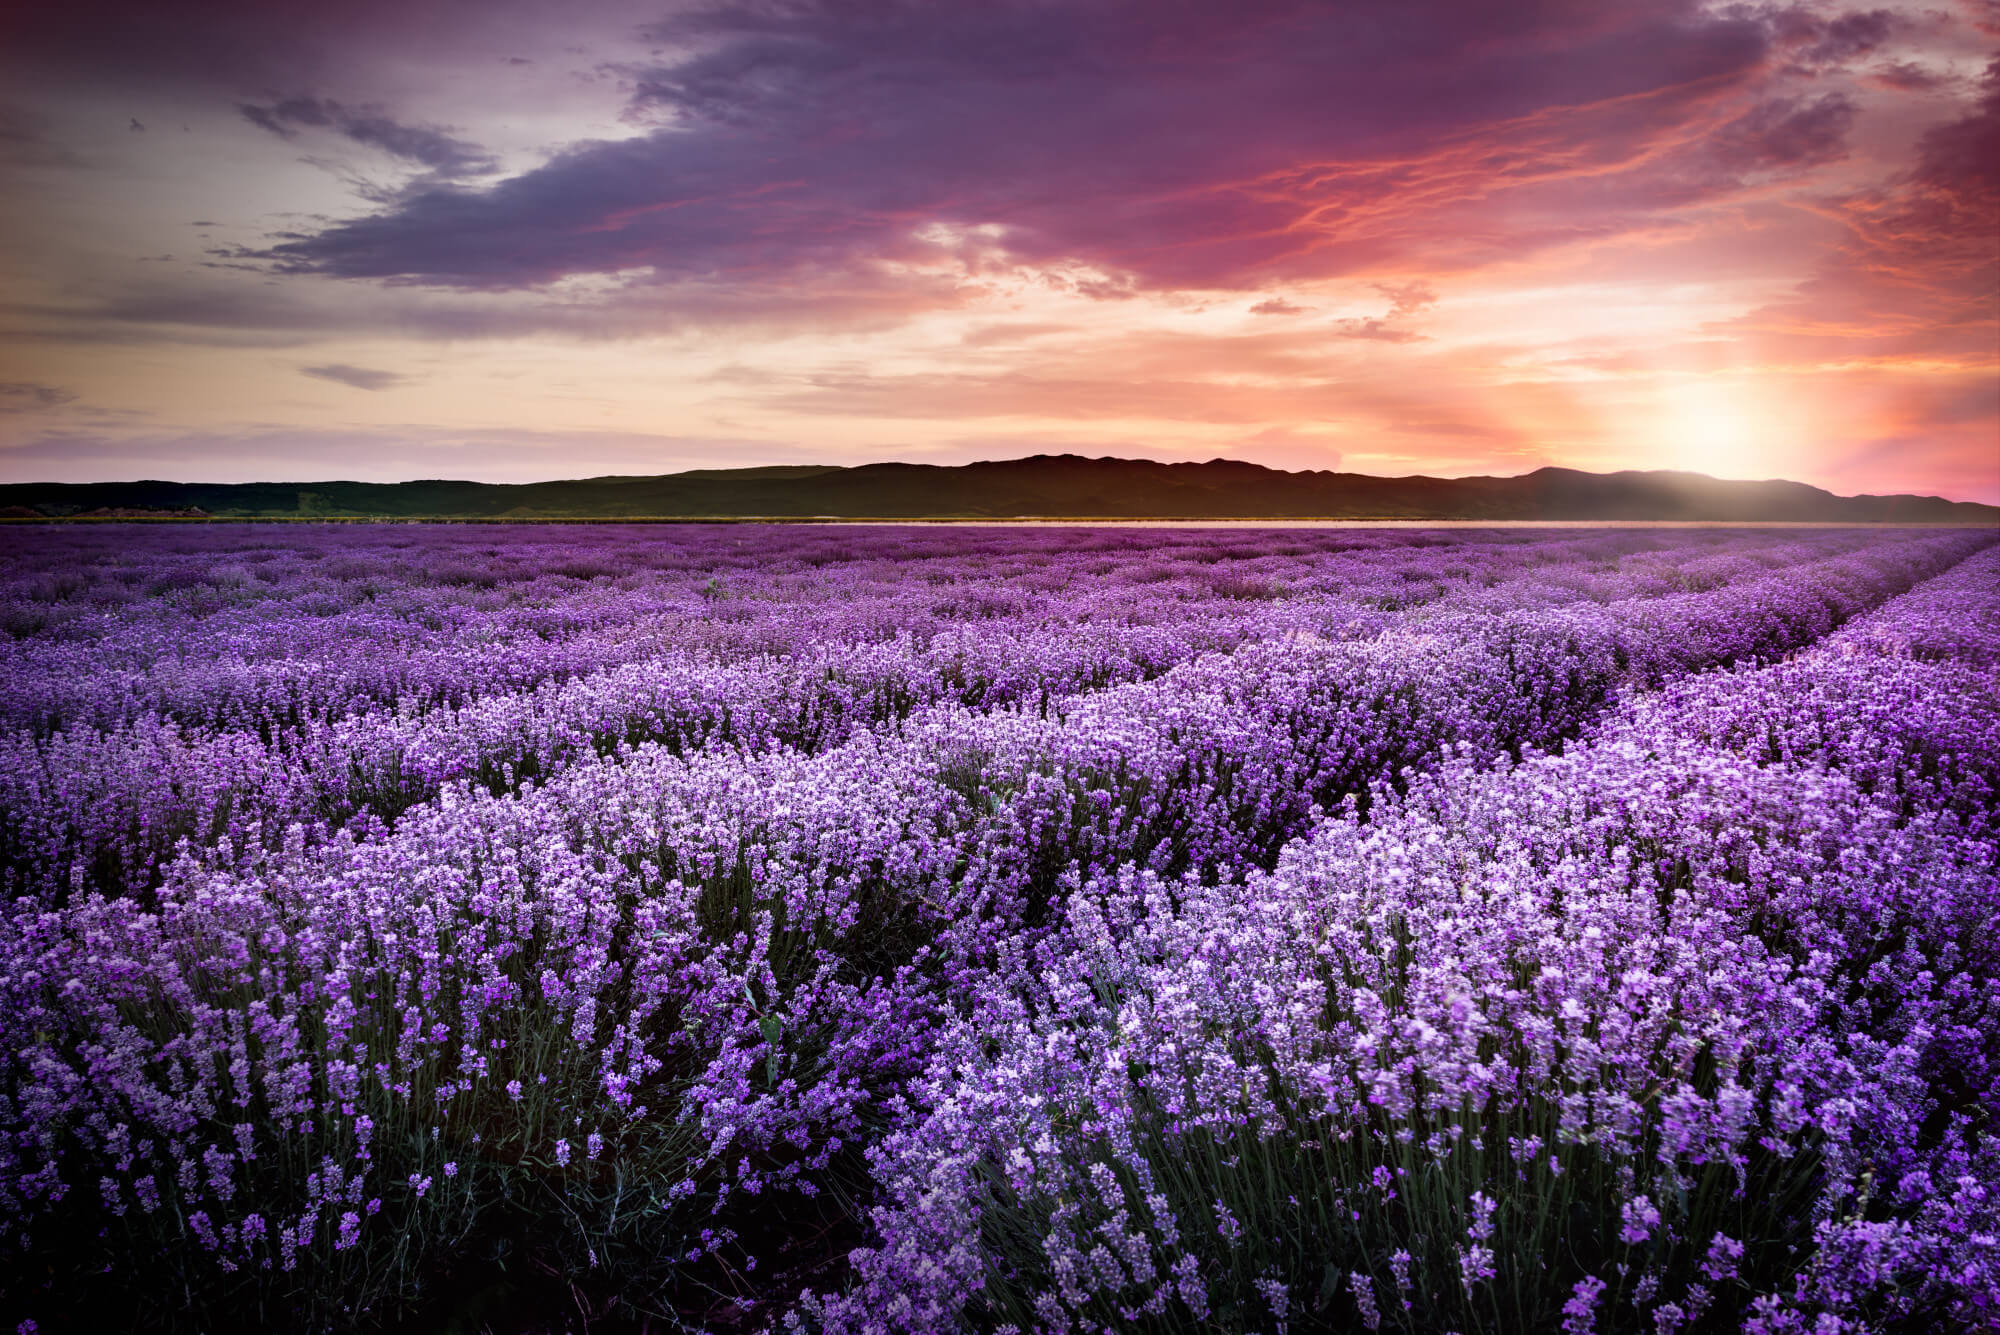 Ein Bild von einem großen Feld mit Lavendelpflanzen, welches als ätherisches Öl verarbeitet wird, bei Sonnenuntergang.